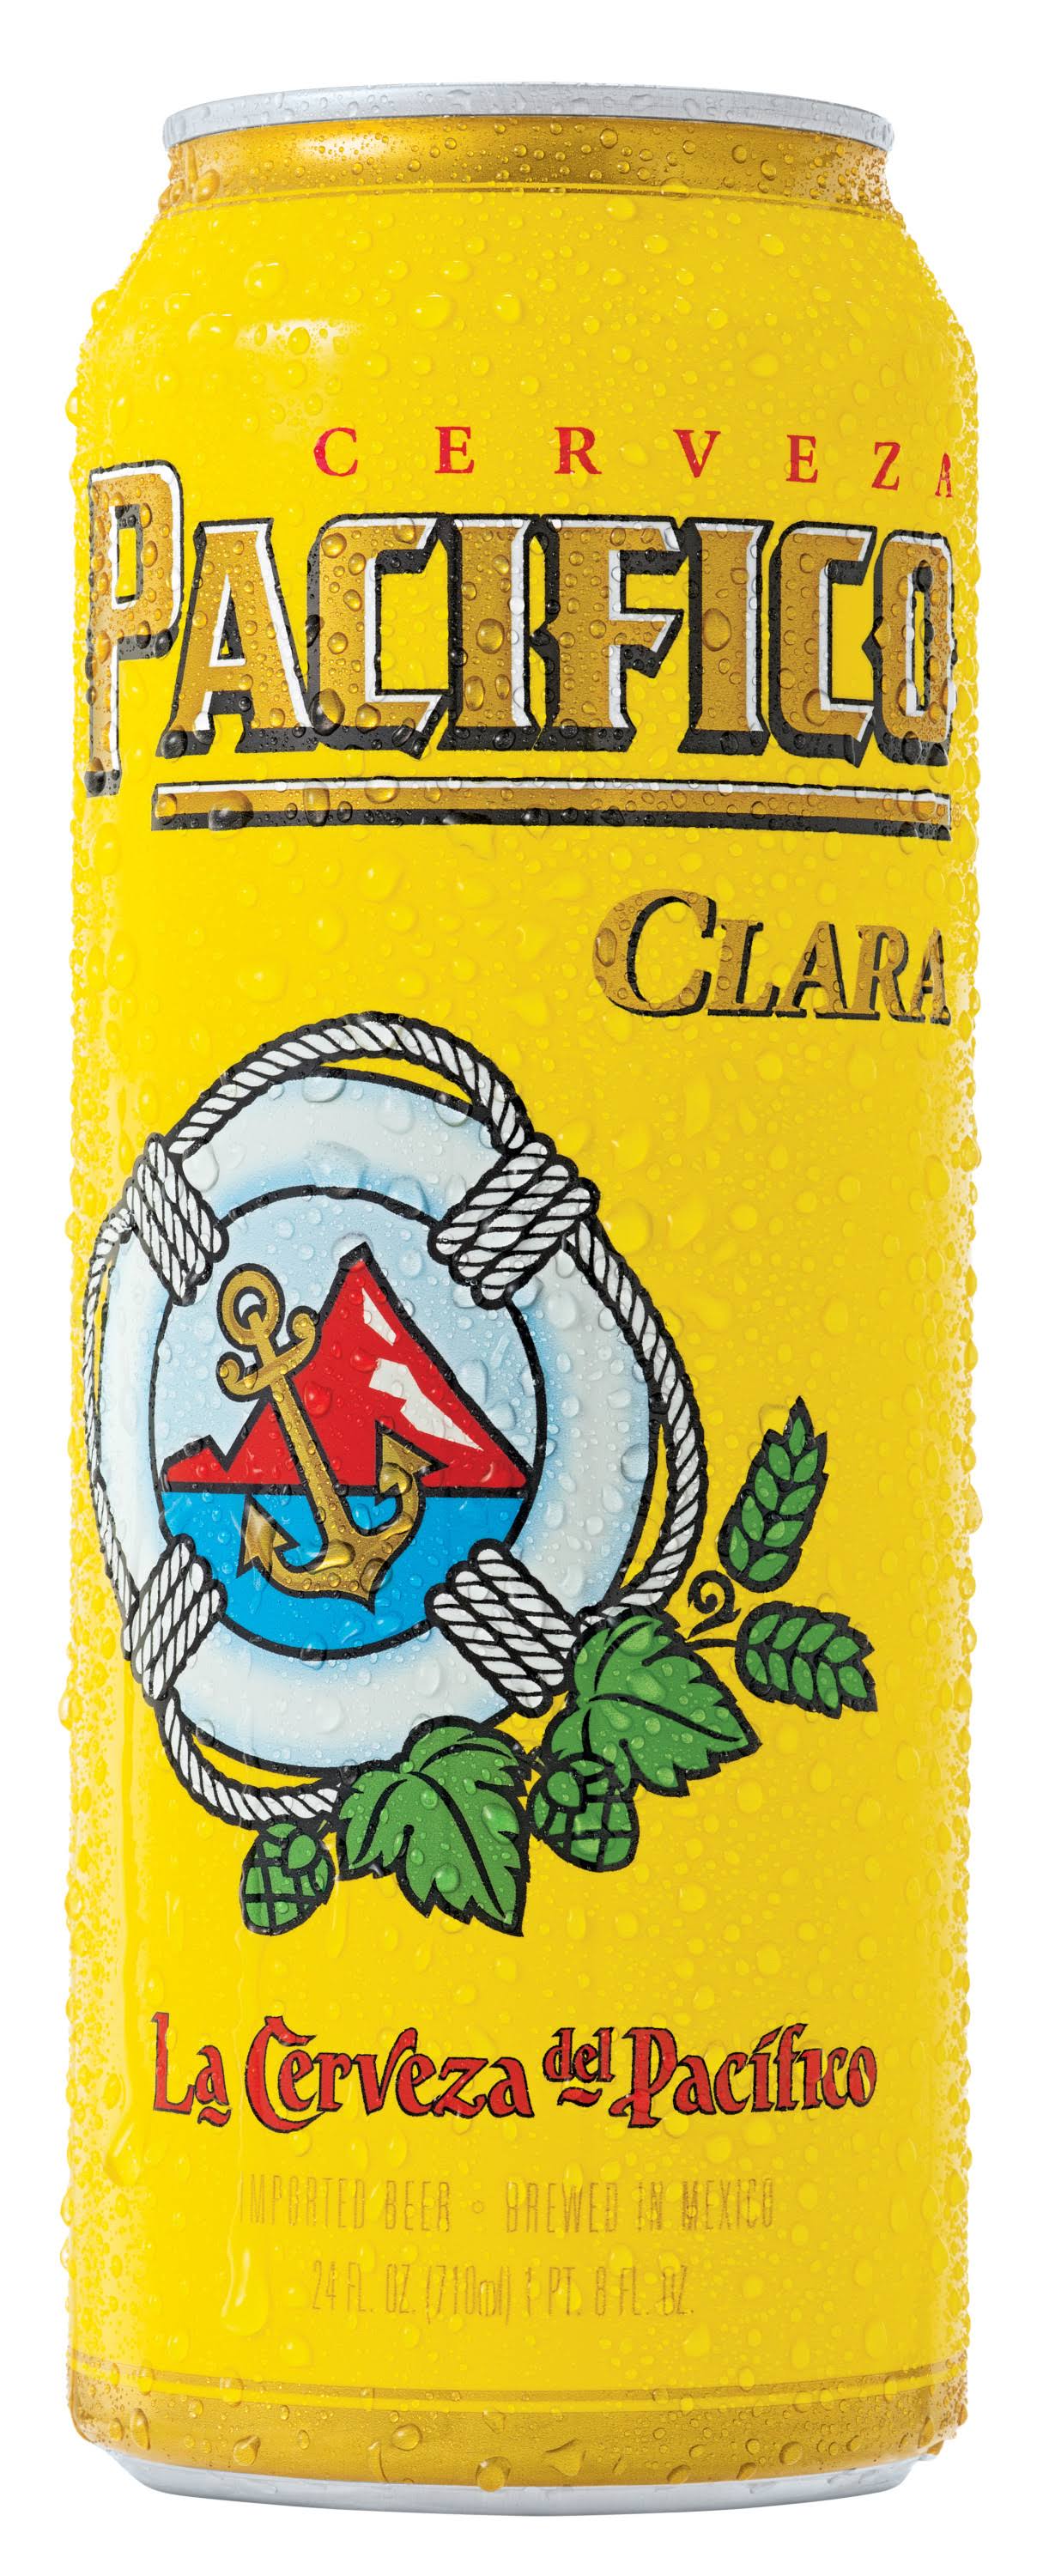 Pacifico Beer, Clara - 24 fl oz